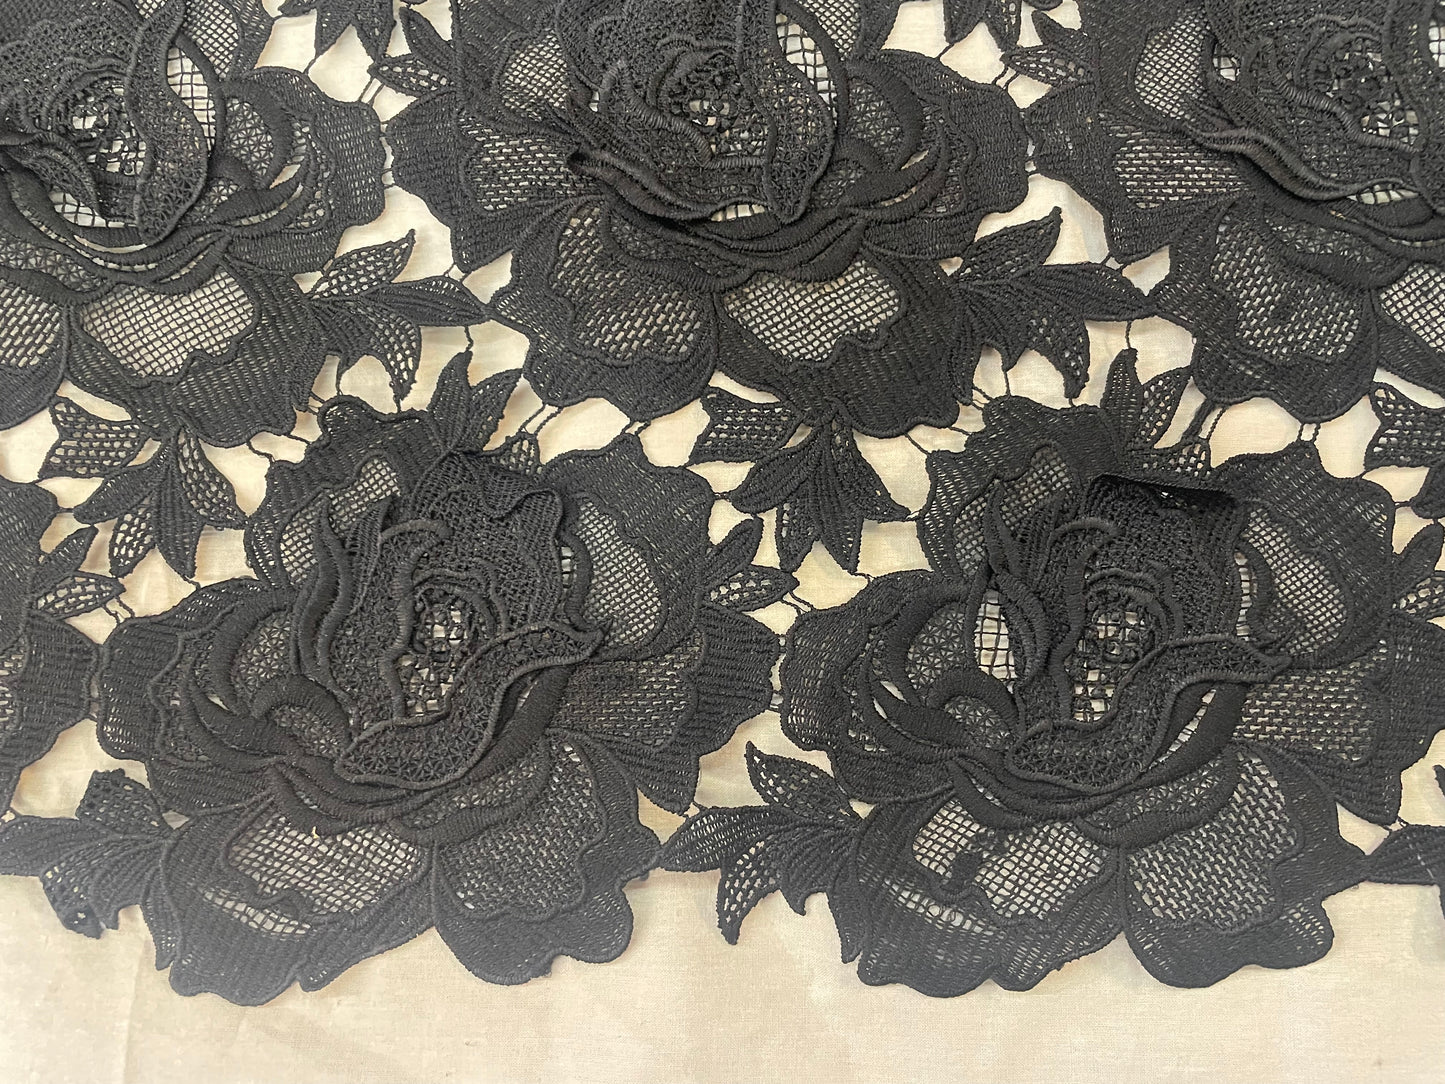 Rose Floral Appliqued Cotton Lace - Jet Black